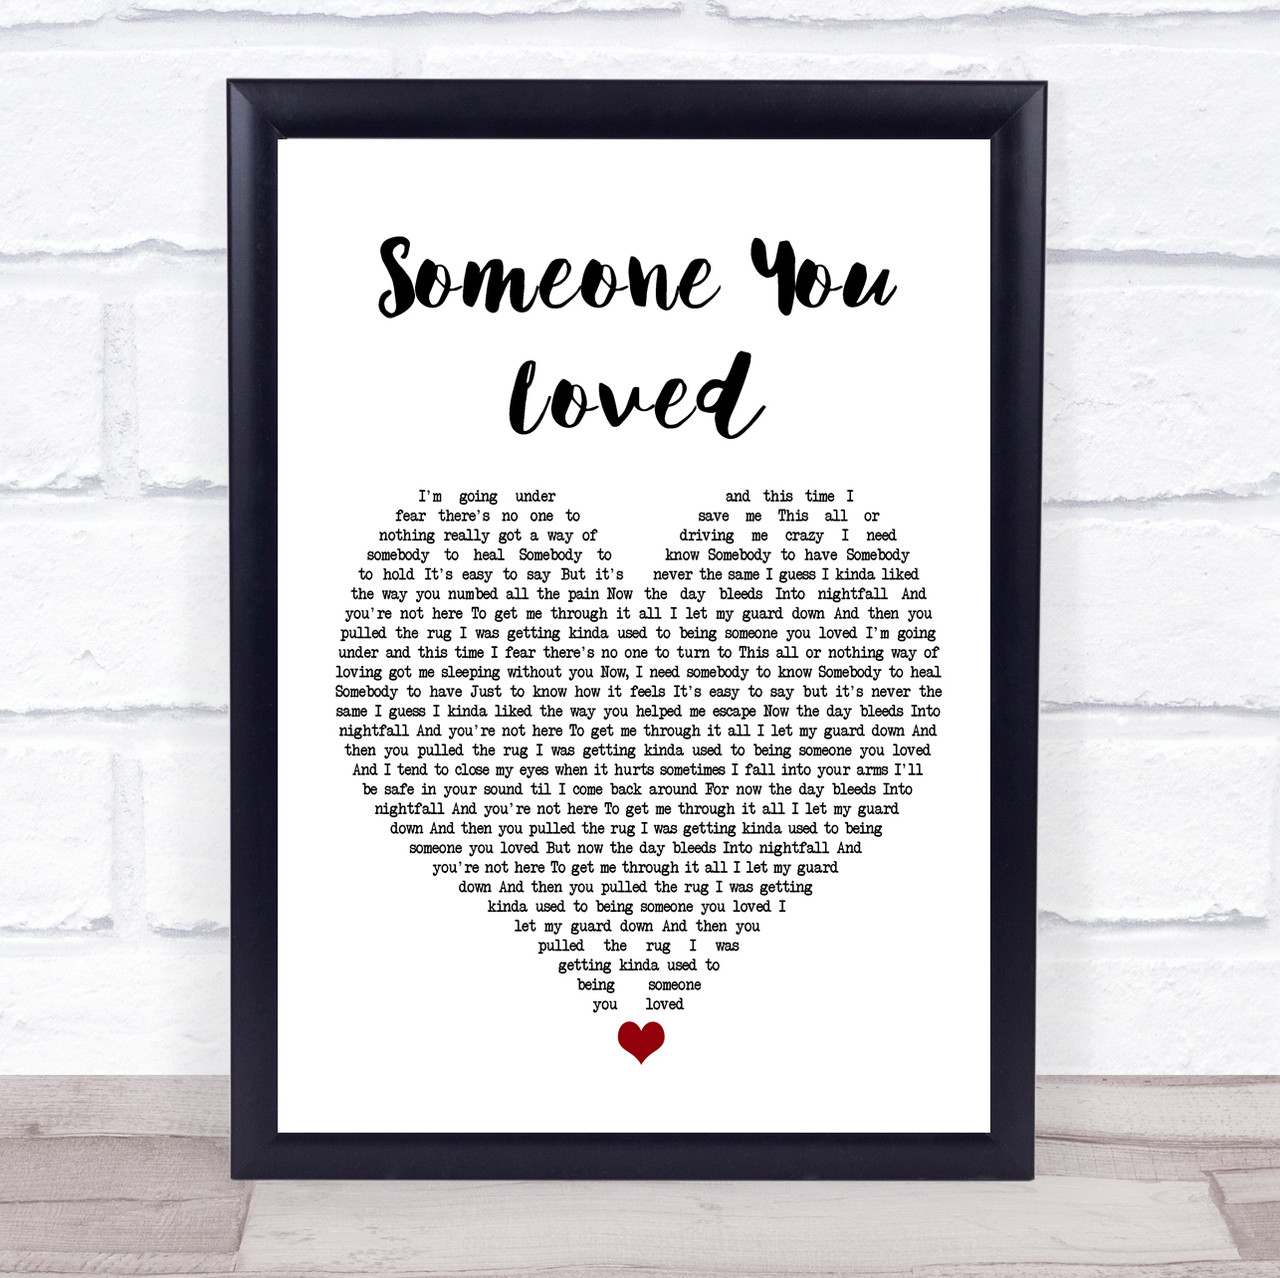 Someone You Loved (Tradução em Português) – Lewis Capaldi